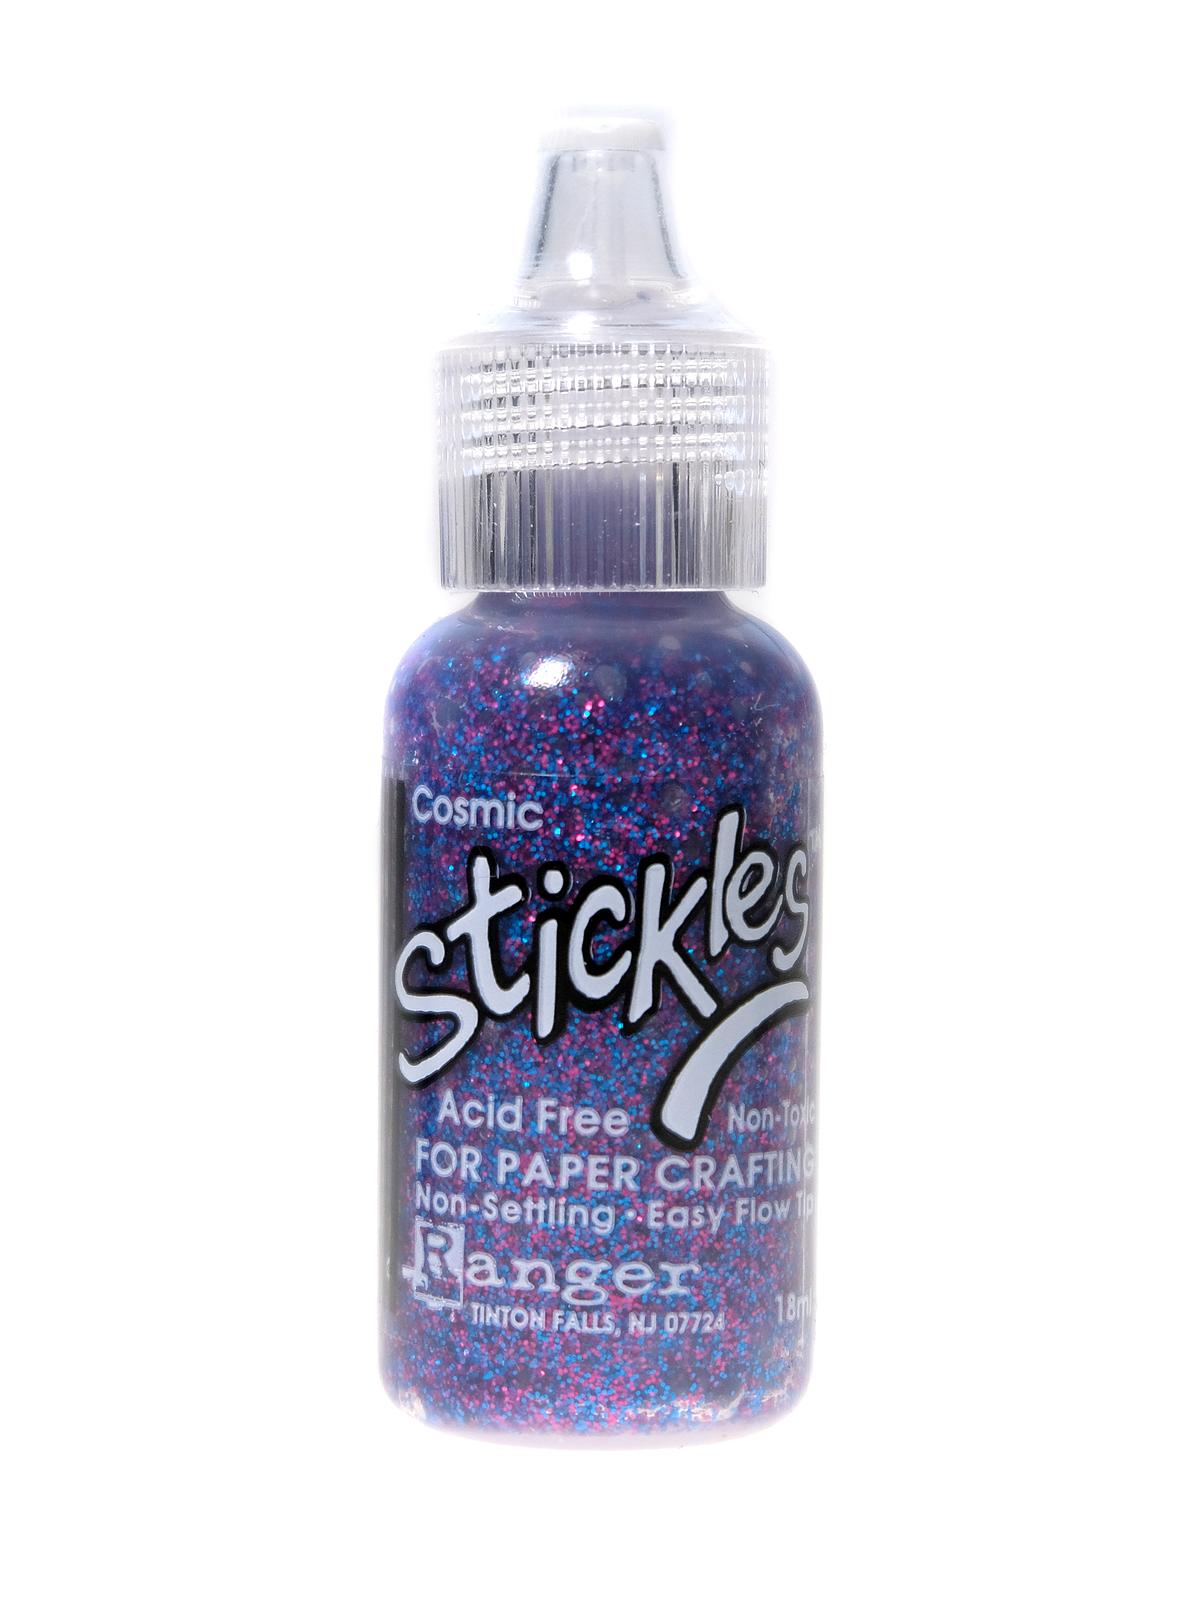 Stickles Glitter Glue by Ranger (ONE bottle)